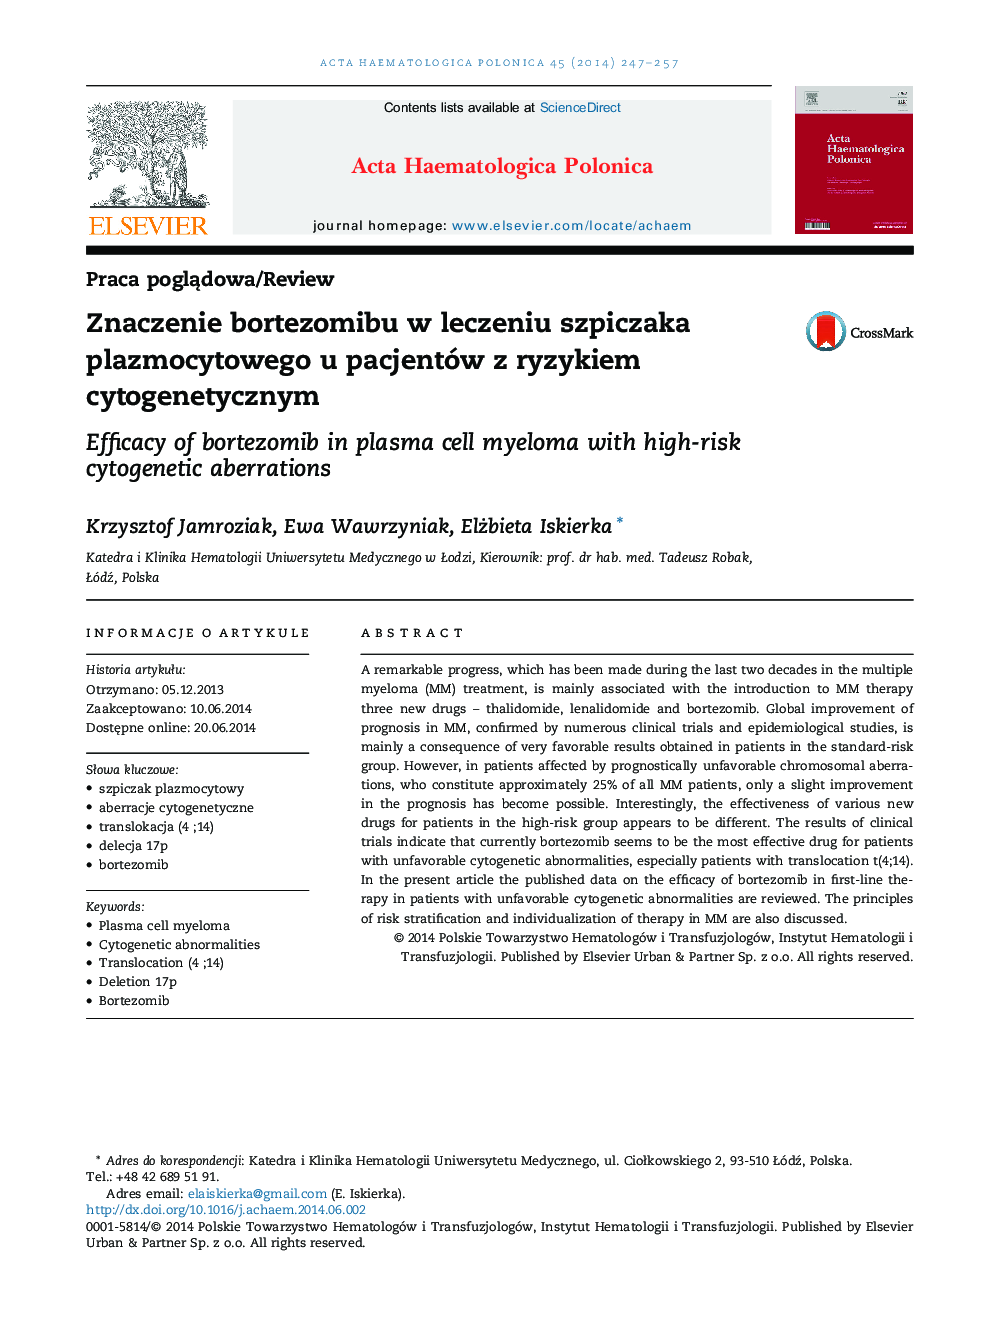 Znaczenie bortezomibu w leczeniu szpiczaka plazmocytowego u pacjentów z ryzykiem cytogenetycznym